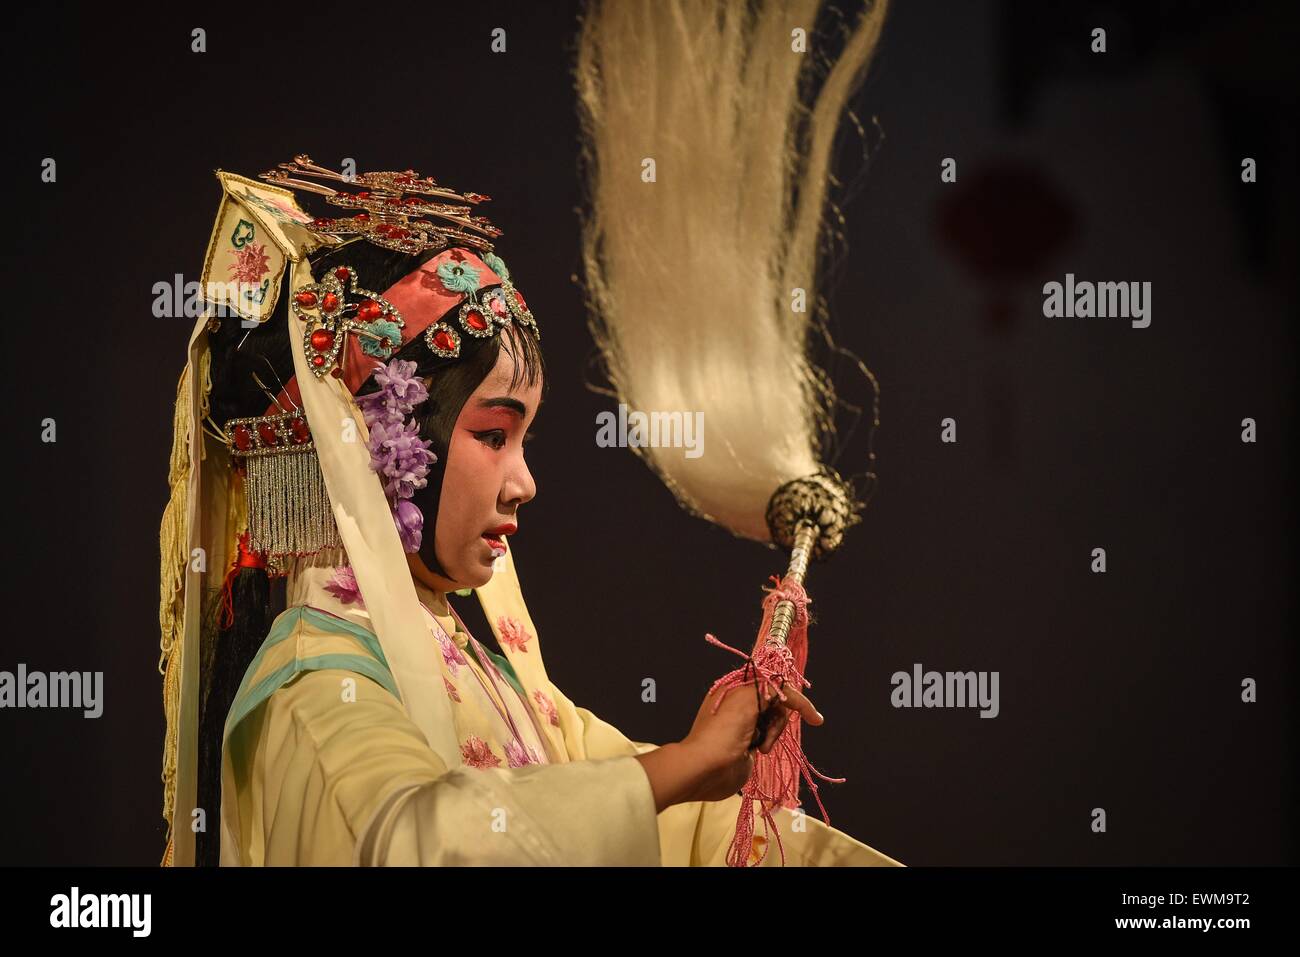 (150628)--NANJING, 28. Juni 2015 (Xinhua)--Yang durchführen Kunqu-Oper in Kunshan, der ostchinesischen Provinz Jiangsu, 26. Juni 2015. 11-Jahr-altes Mädchen Yang Sie ihre Mutter verloren, als sie sechs war und zwei Jahre später ihr Vater starb. Das Elend sie verwandelt sich in ein Mädchen schüchtern und introvertiert. Doch sie verliebte sich in Kunqu-Oper, eine traditionelle chinesische Kunst mit einer Geschichte von 600 Jahren durch Zufall und wurde selbstbewusst und mehr ausgehende. Sie gewann eine Goldmedaille bei einem national Children Opernwettbewerb und hielt auf Jagd nach ihren Traum, ein professioneller Künstler der Kunqu-Oper. (X Stockfoto